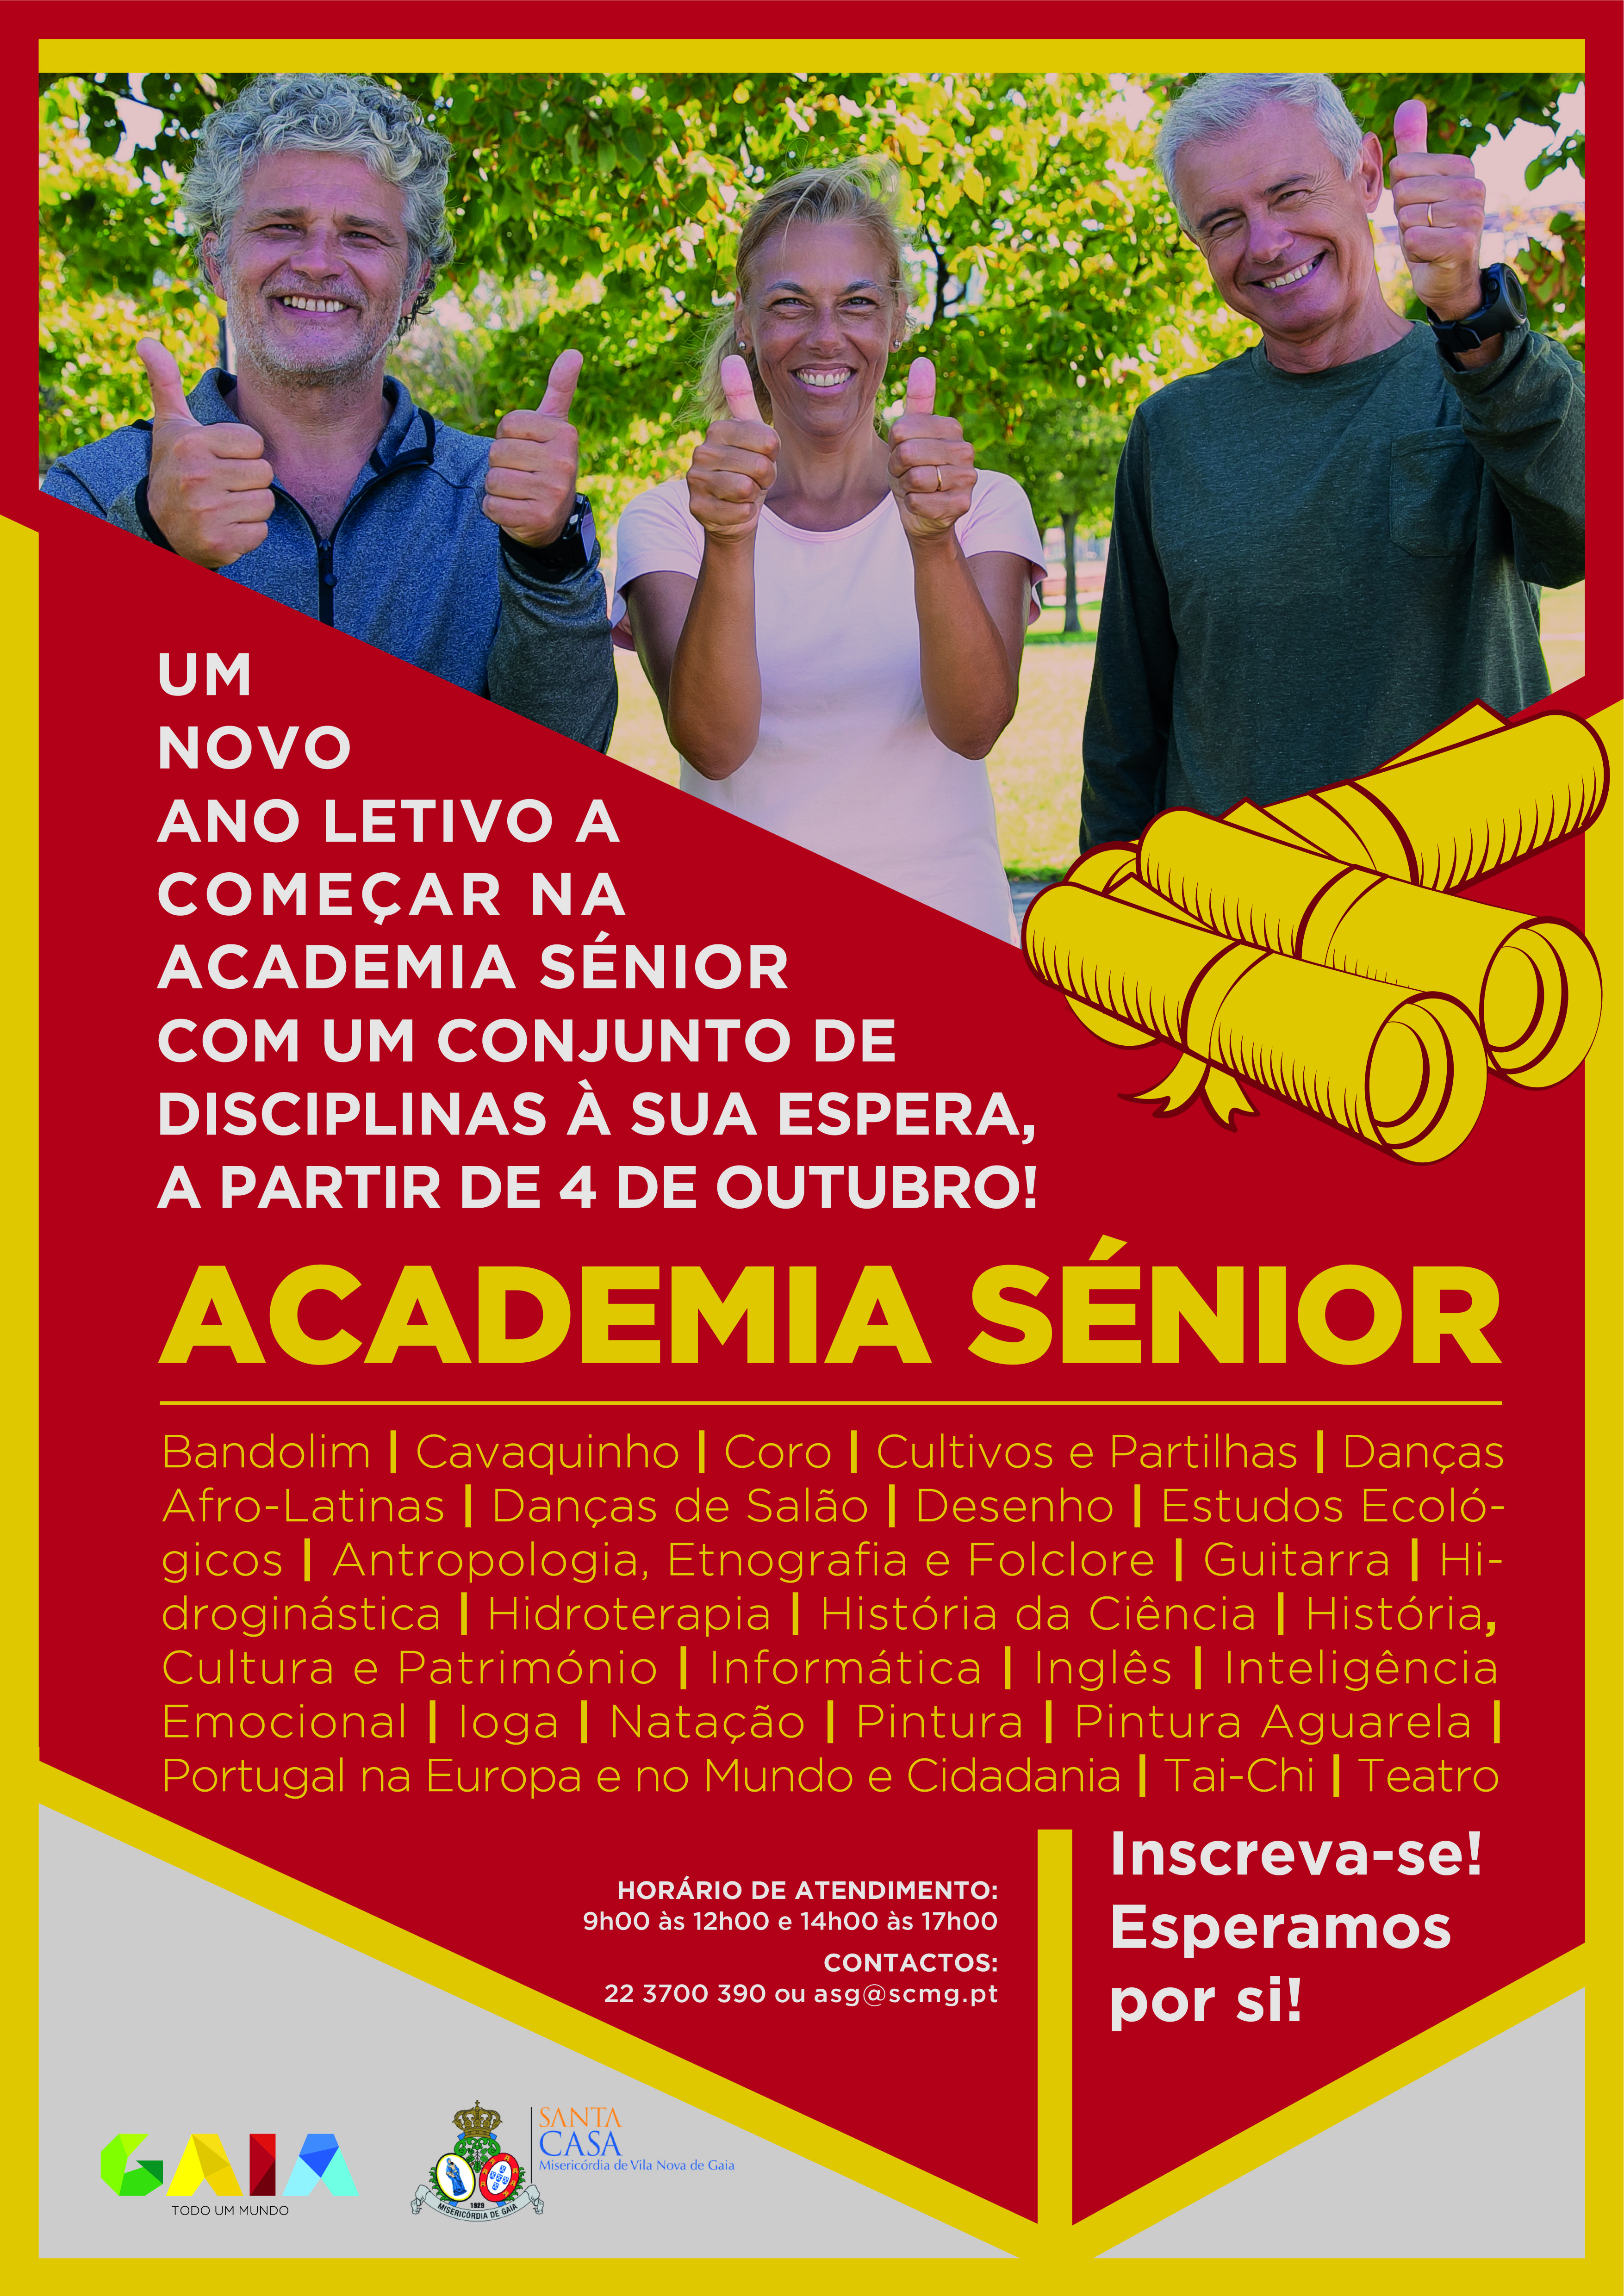 https://www.cm-gaia.pt/fotos/editor2/acao_social/2021/cartaz_academia_senior_2021.jpg